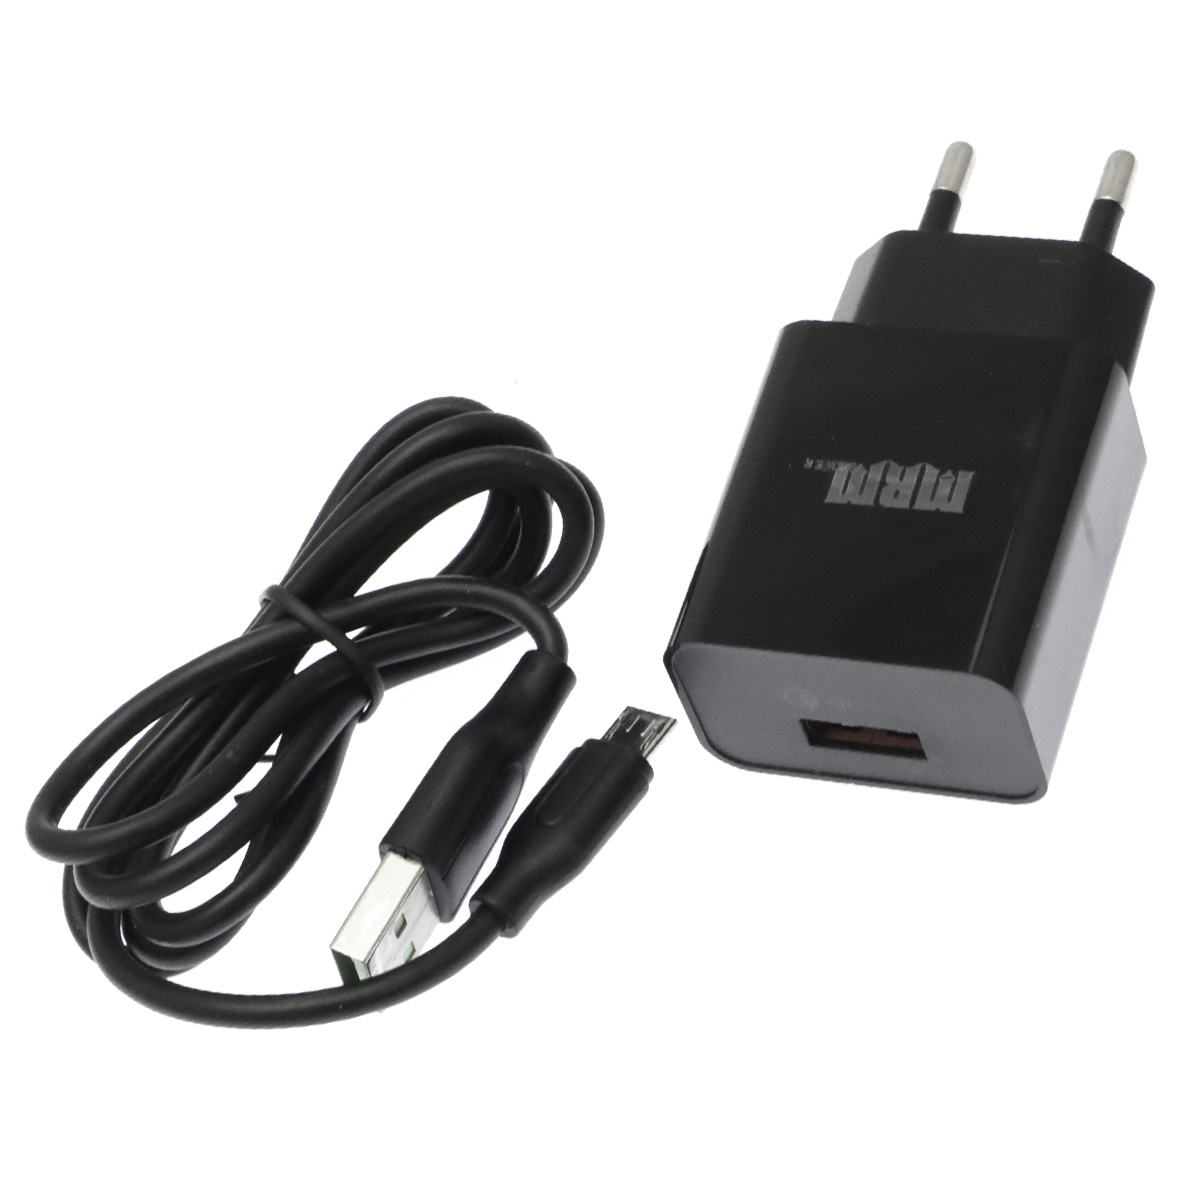 СЗУ (Сетевое зарядное устройство) MRM P30 с кабелем Micro USB, 3A, 1 USB, QC3.0, длина 1 метр, цвет черный